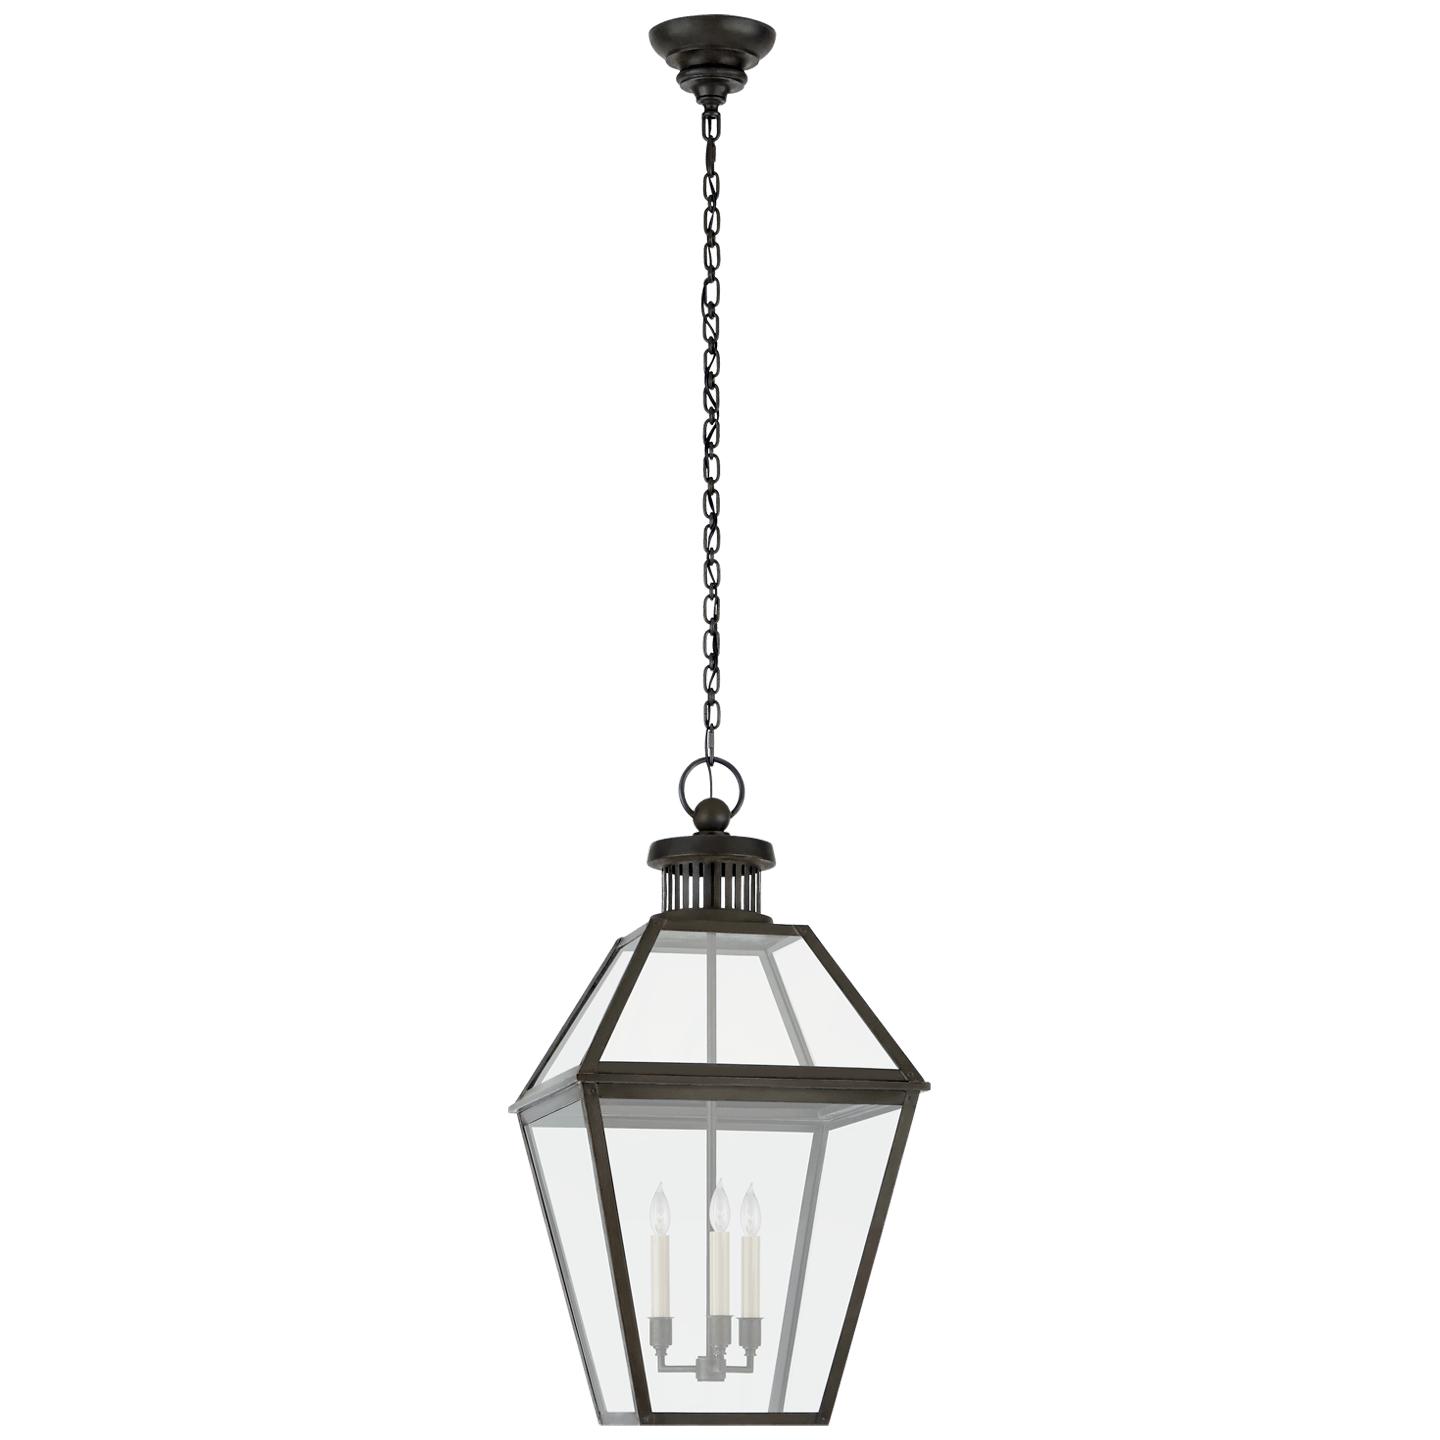 Купить Подвесной светильник Stratford Large Hanging Lantern в интернет-магазине roooms.ru